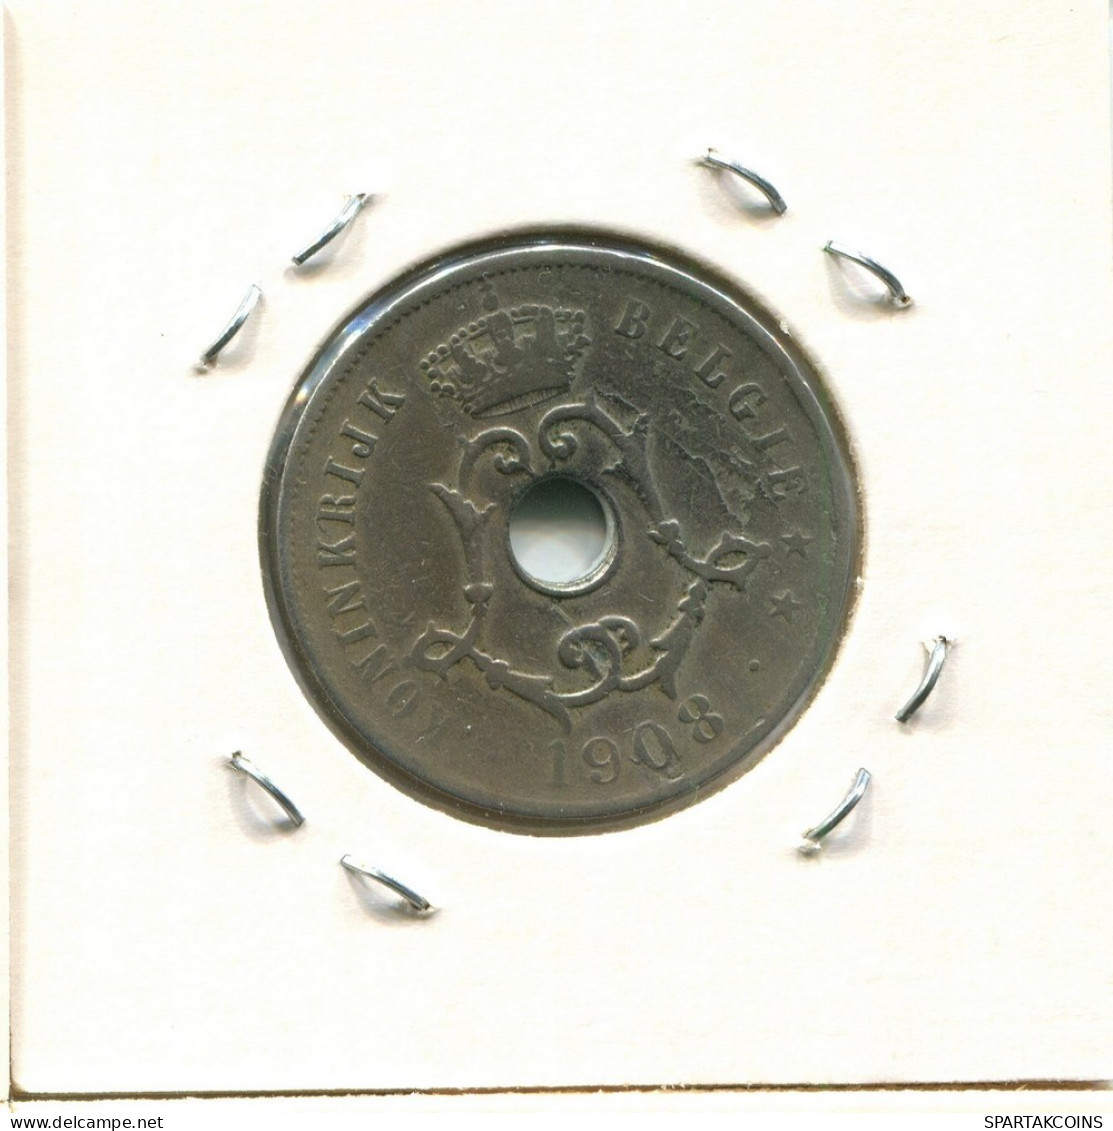 25 CENTIMES 1908 BELGIE-BELGIQUE BELGIEN BELGIUM Münze #BA300.D.A - 25 Centimes